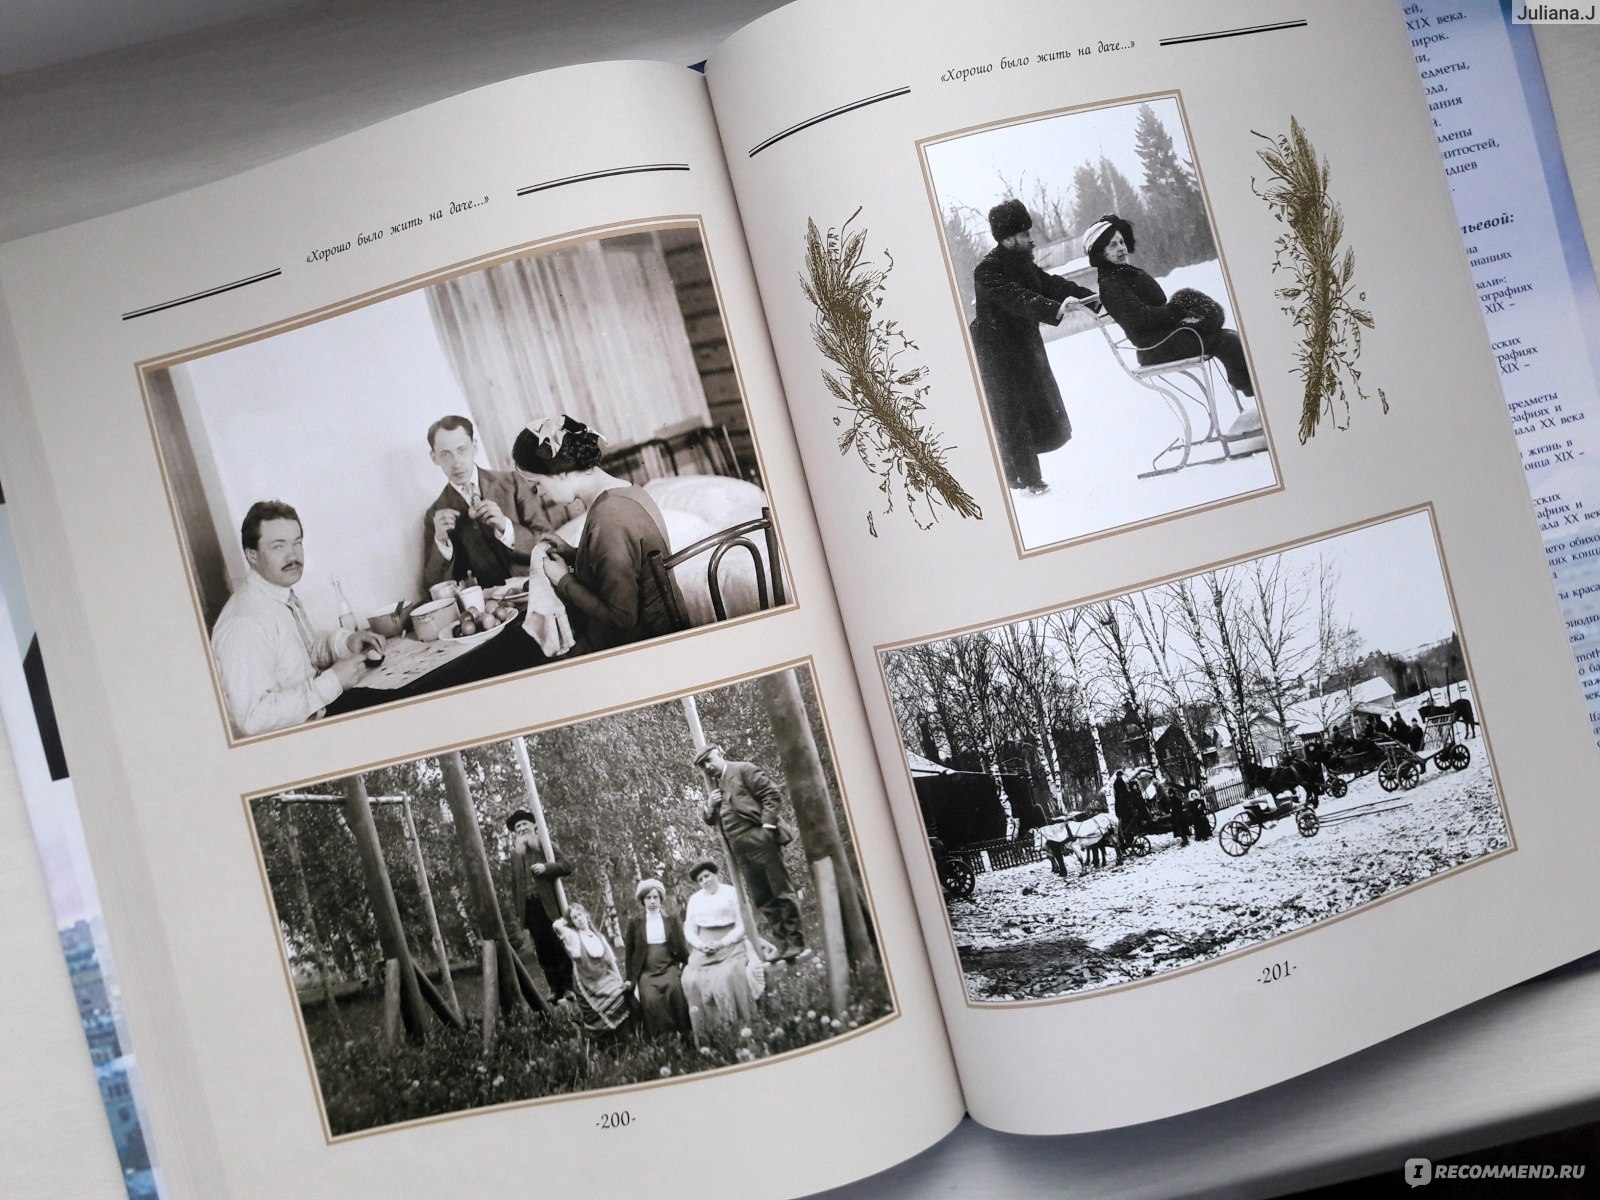 Елена лаврентьева хорошо было жить на даче дачная и усадебная жизнь в фотографиях и воспоминаниях